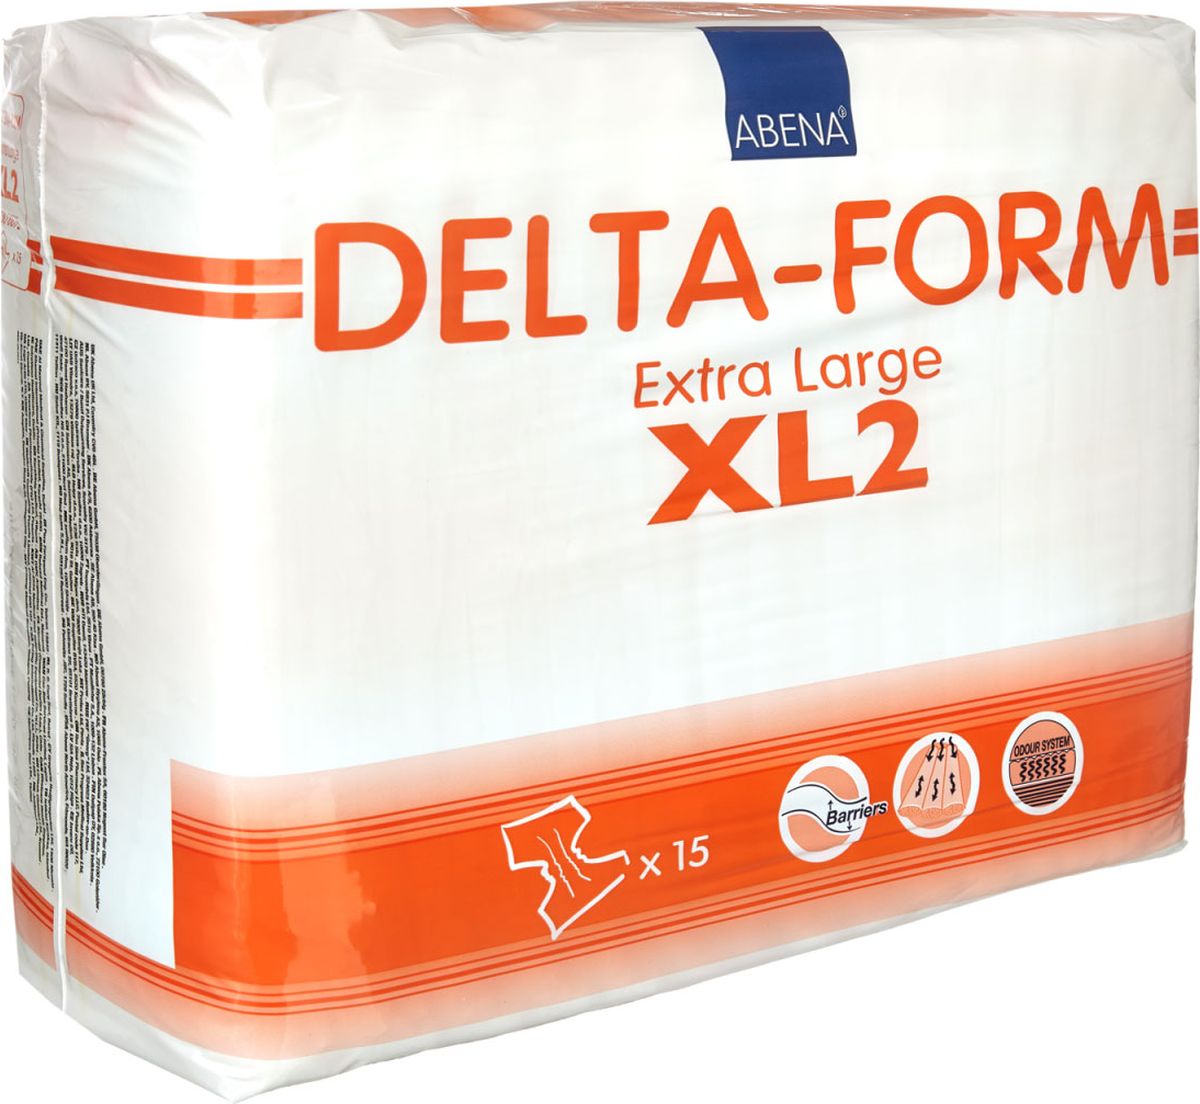 Abena Подгузники для взрослых Delta-Form XL2 15 шт